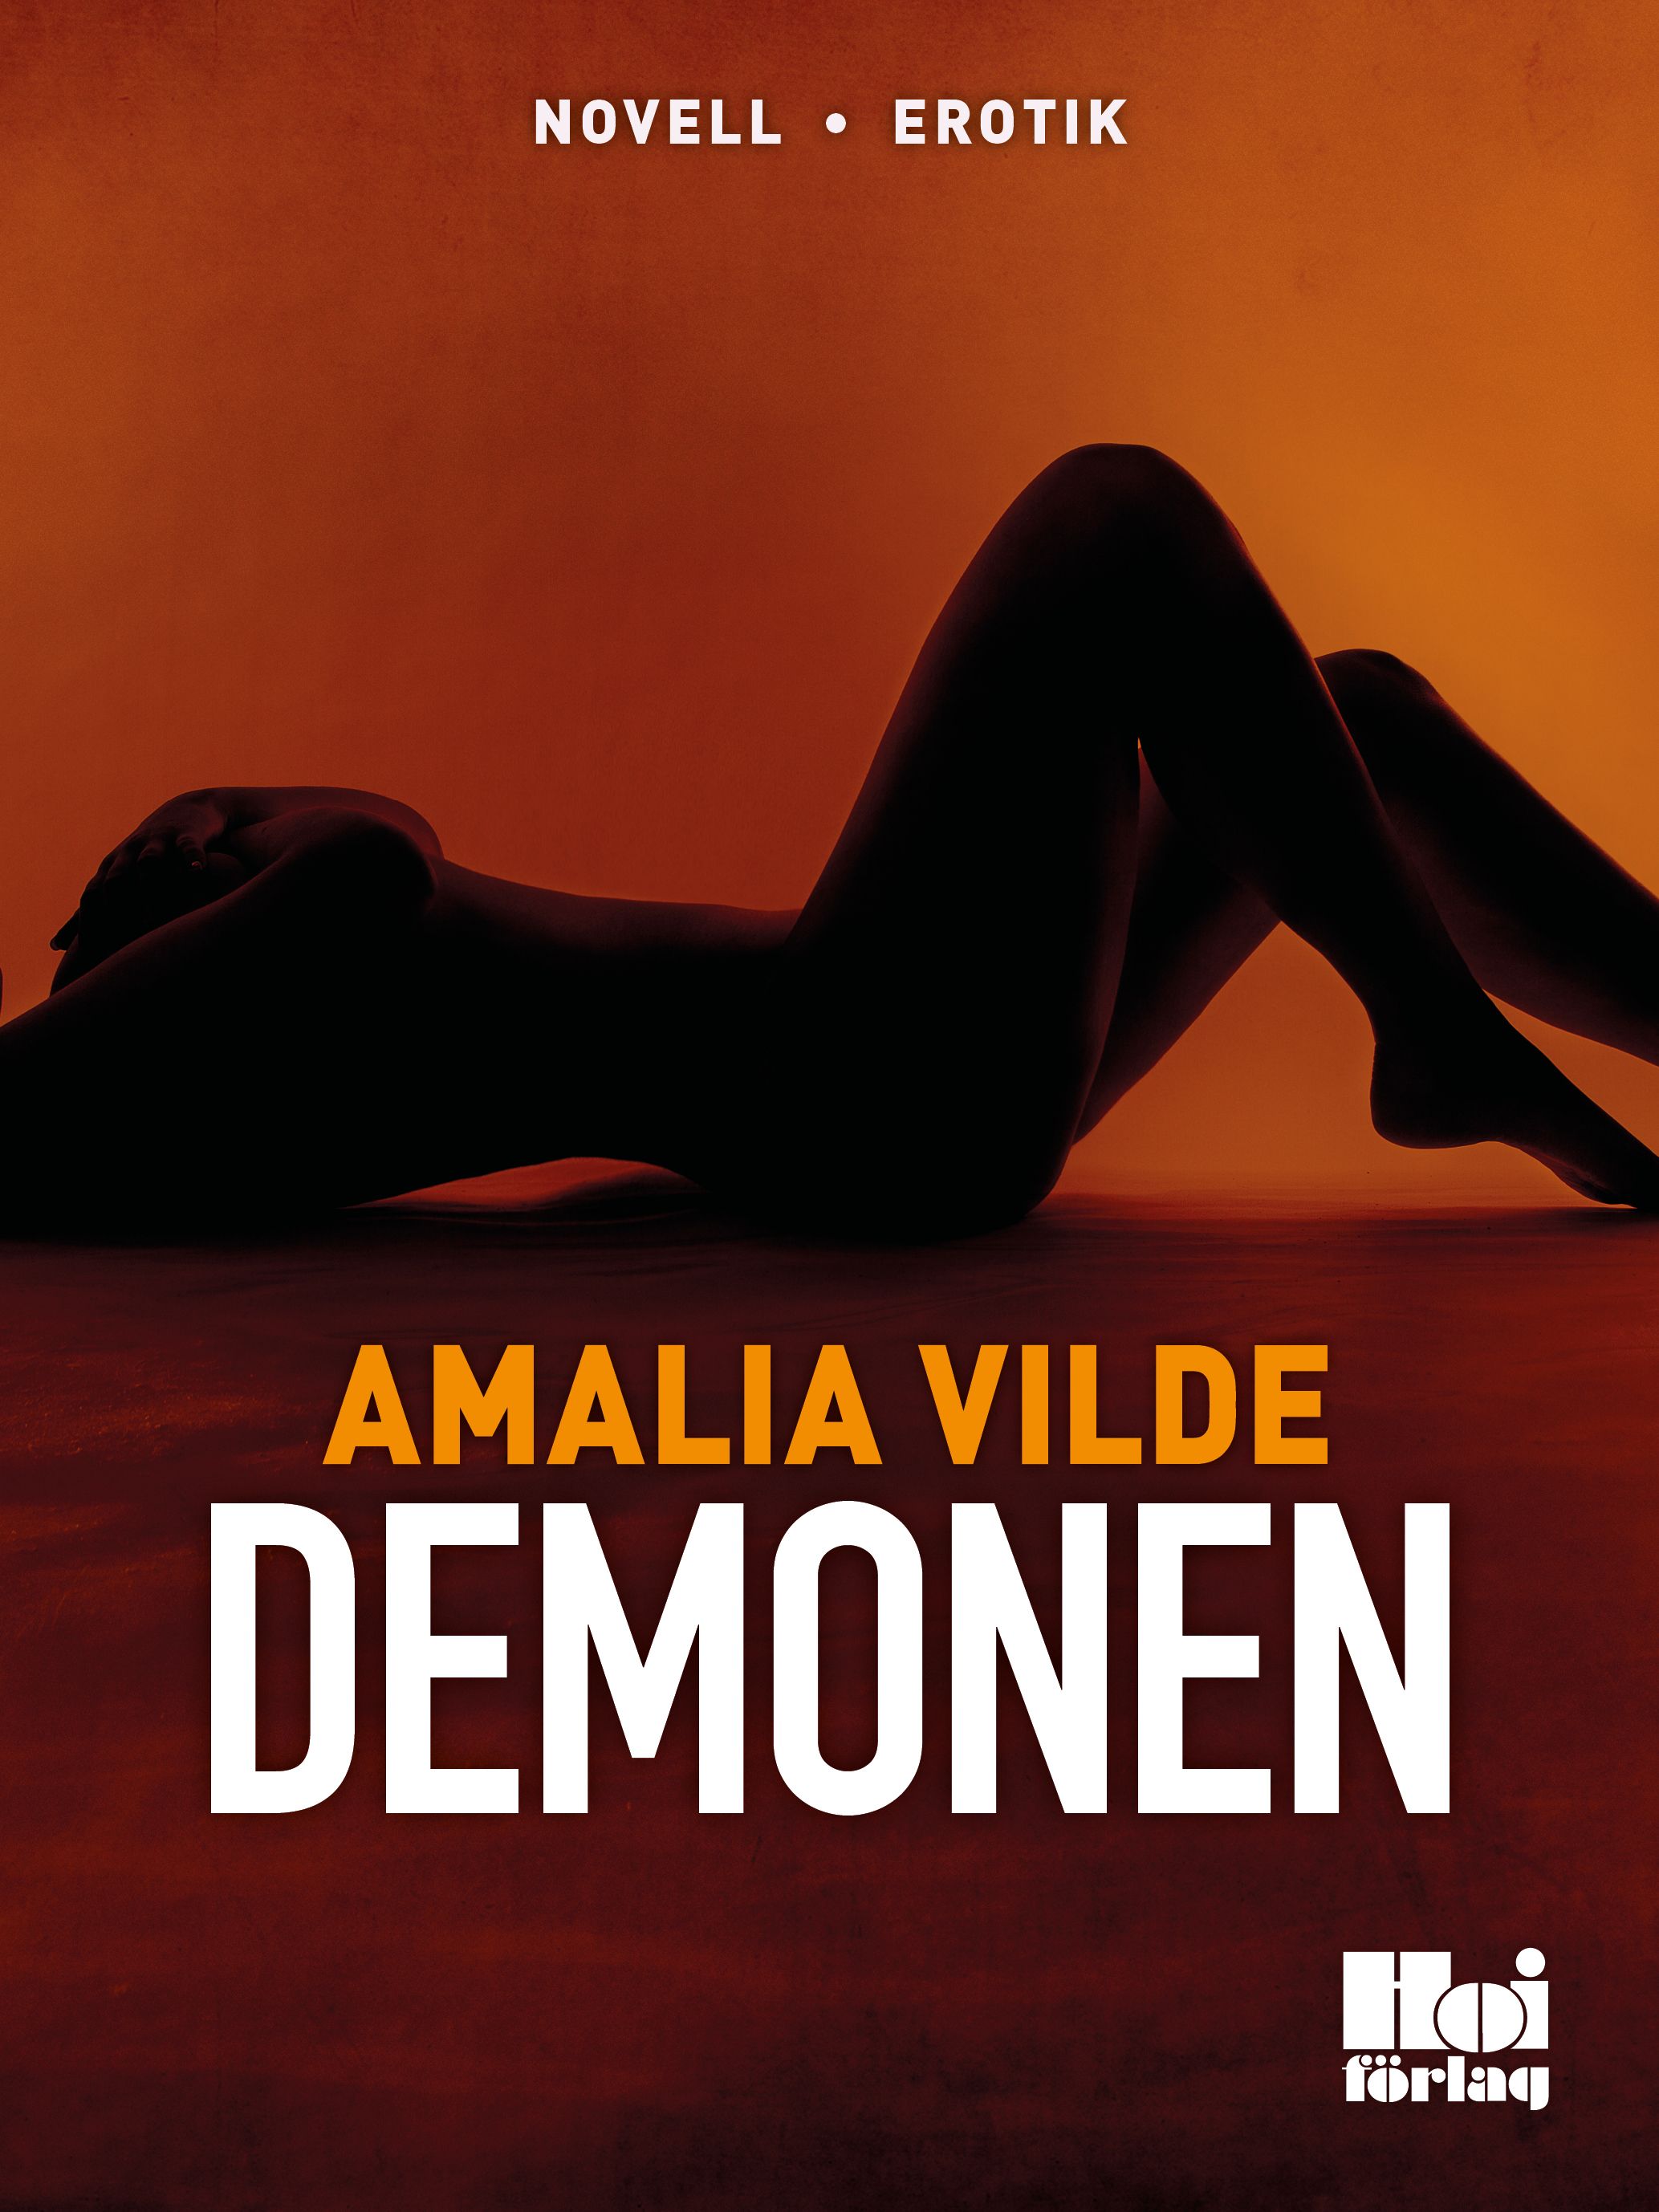 Demonen, e-bog af Amalia Vilde